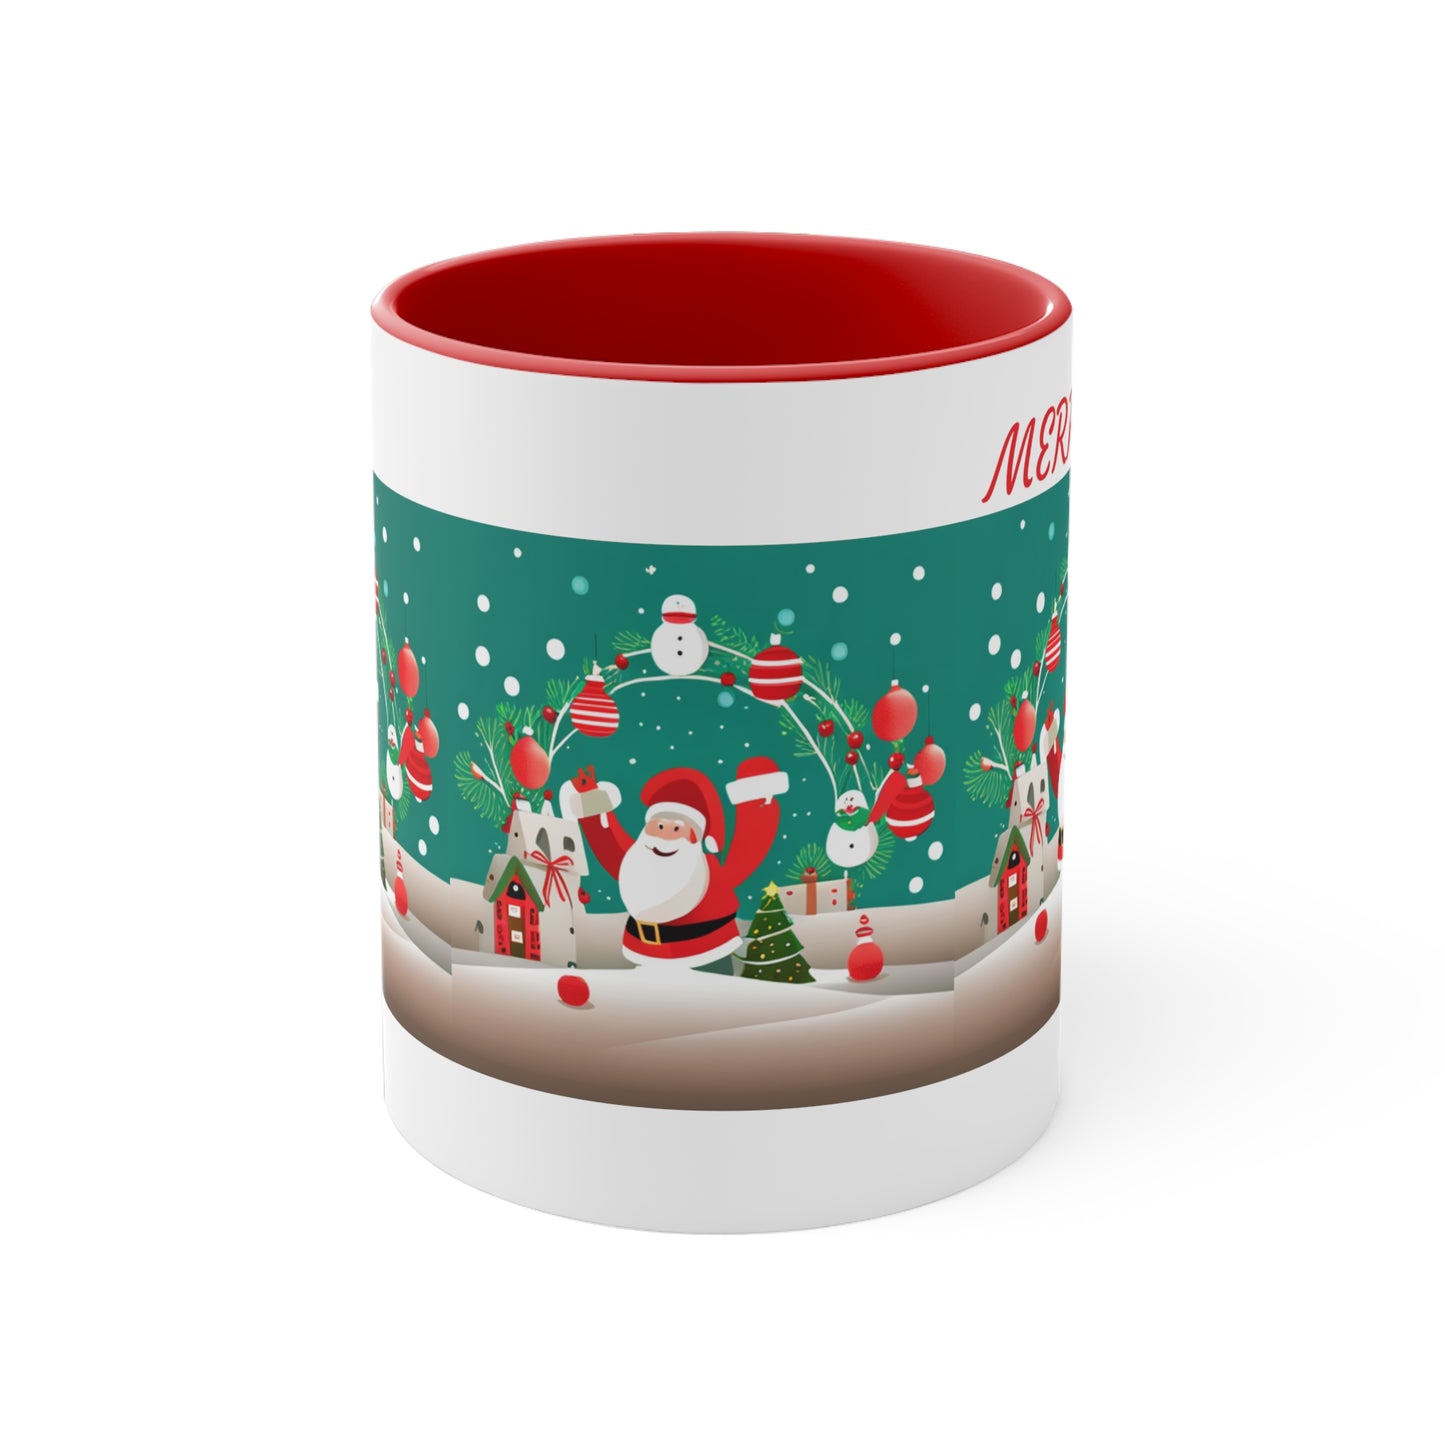 Merry Christmas Mug Accent Coffee Mug, Red and Green Mug for Christmas Decor 11oz